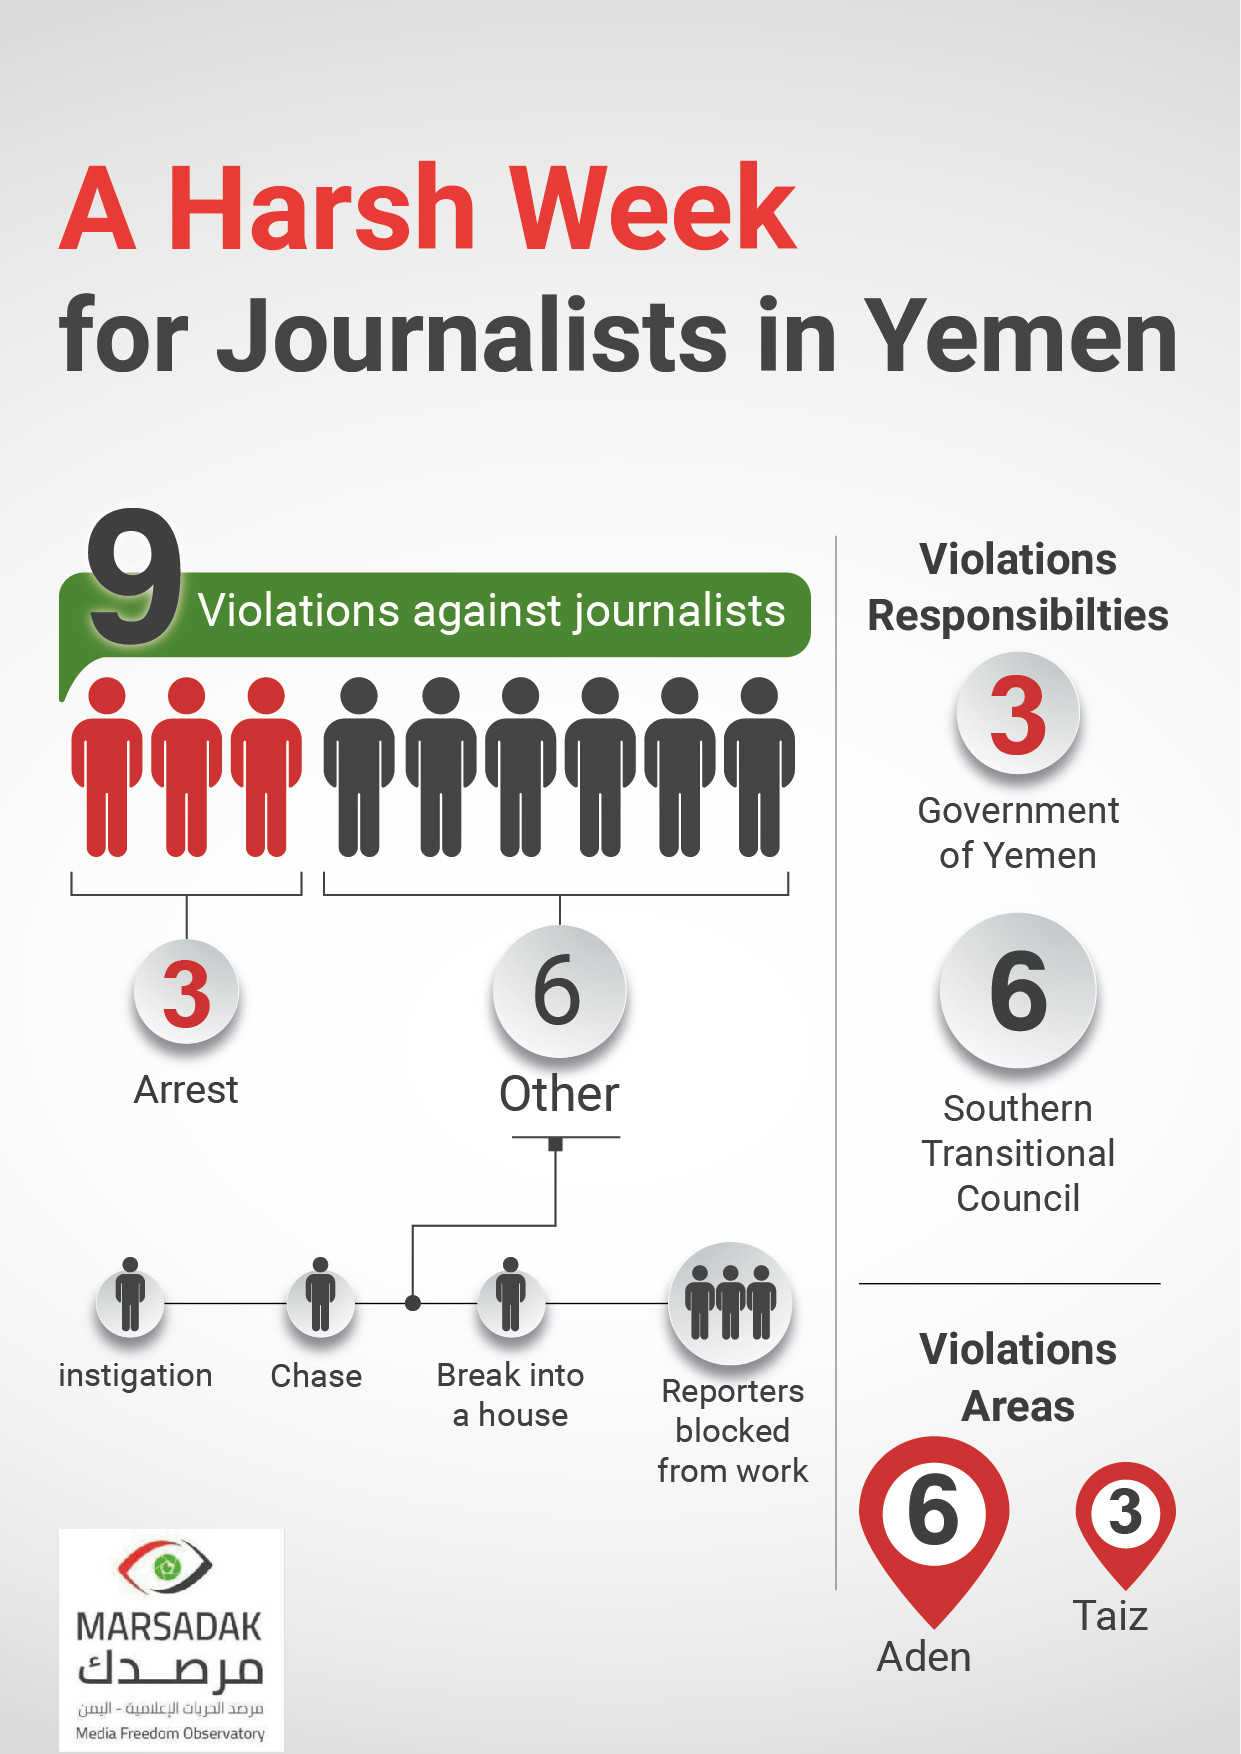 A Harsh Week for Journalists in Yemen